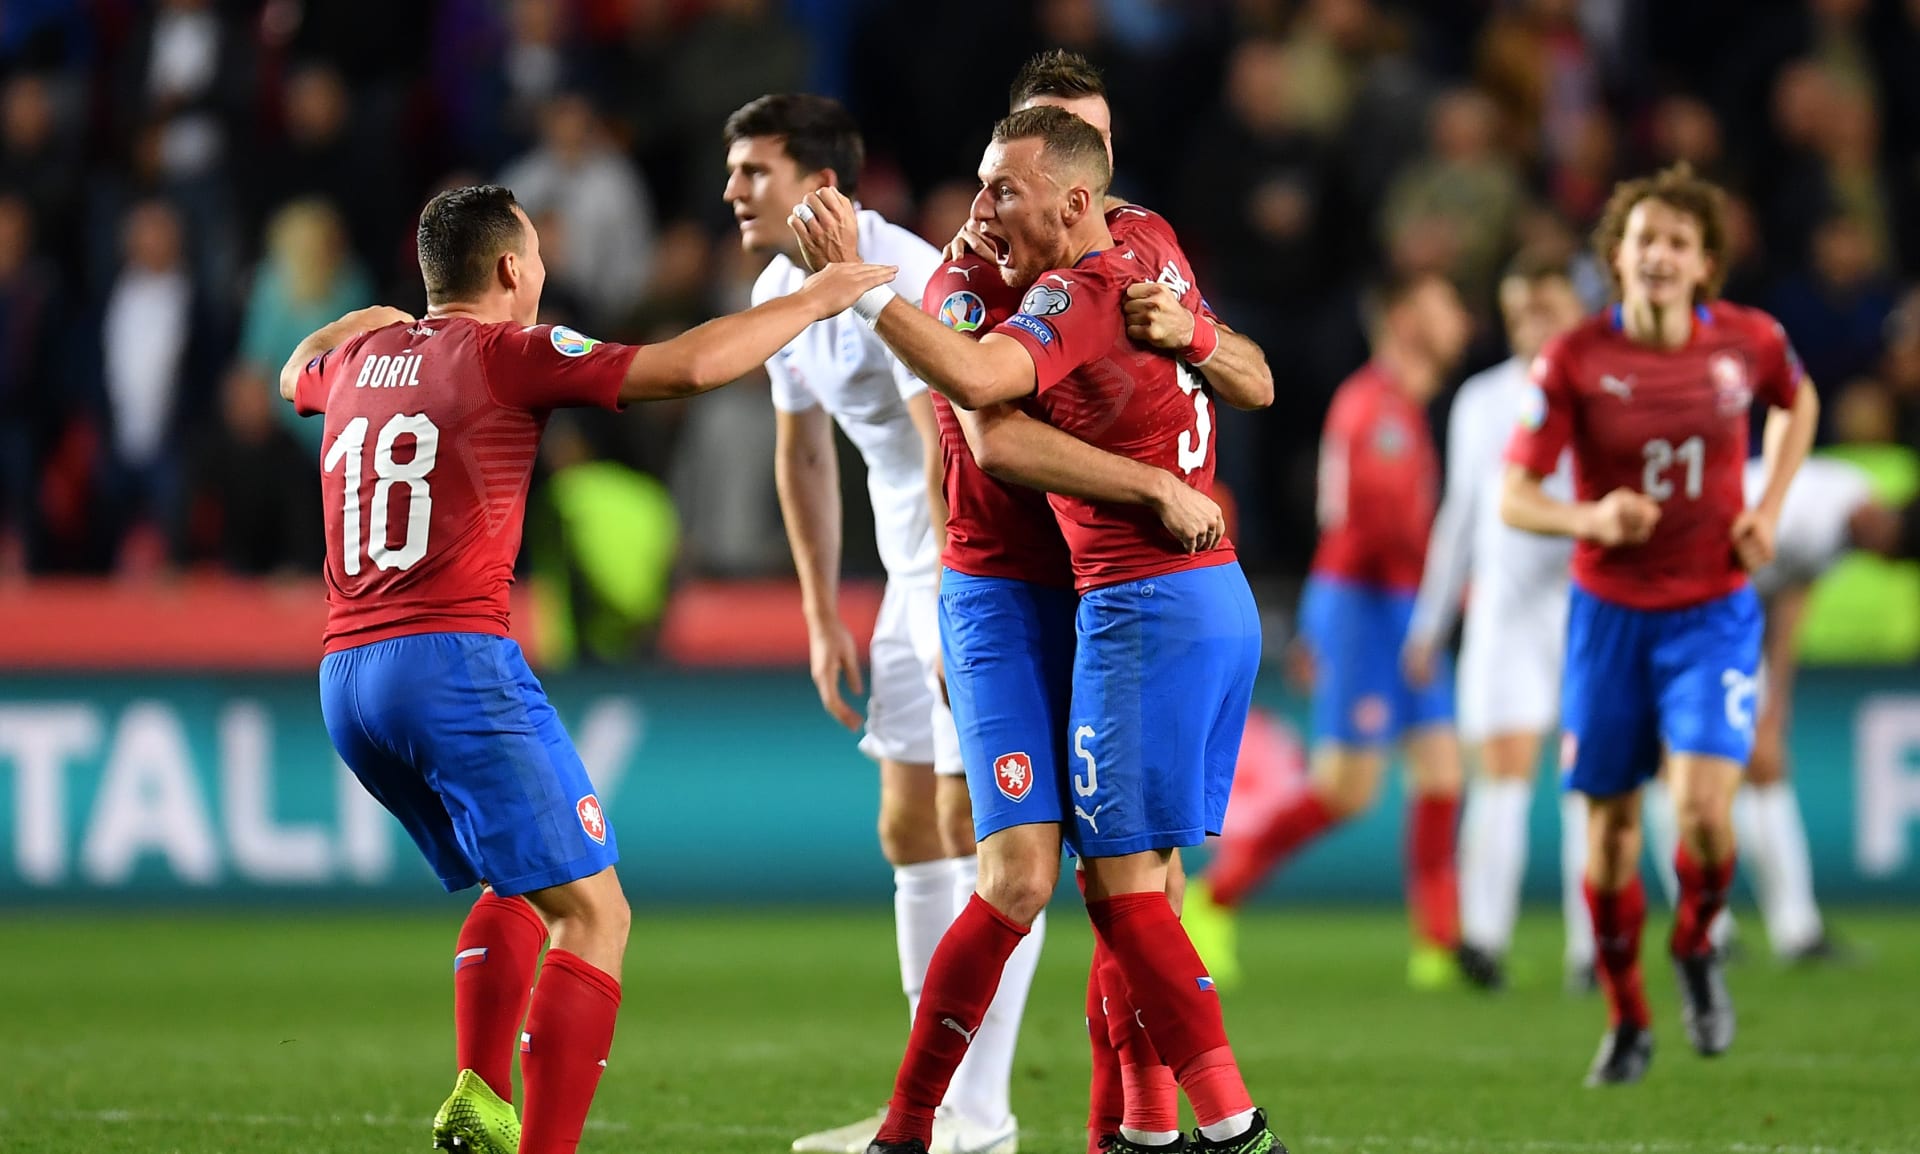 Obrovská radost českých fotbalistů těsně po konci zápasu s Anglií v roce 2019